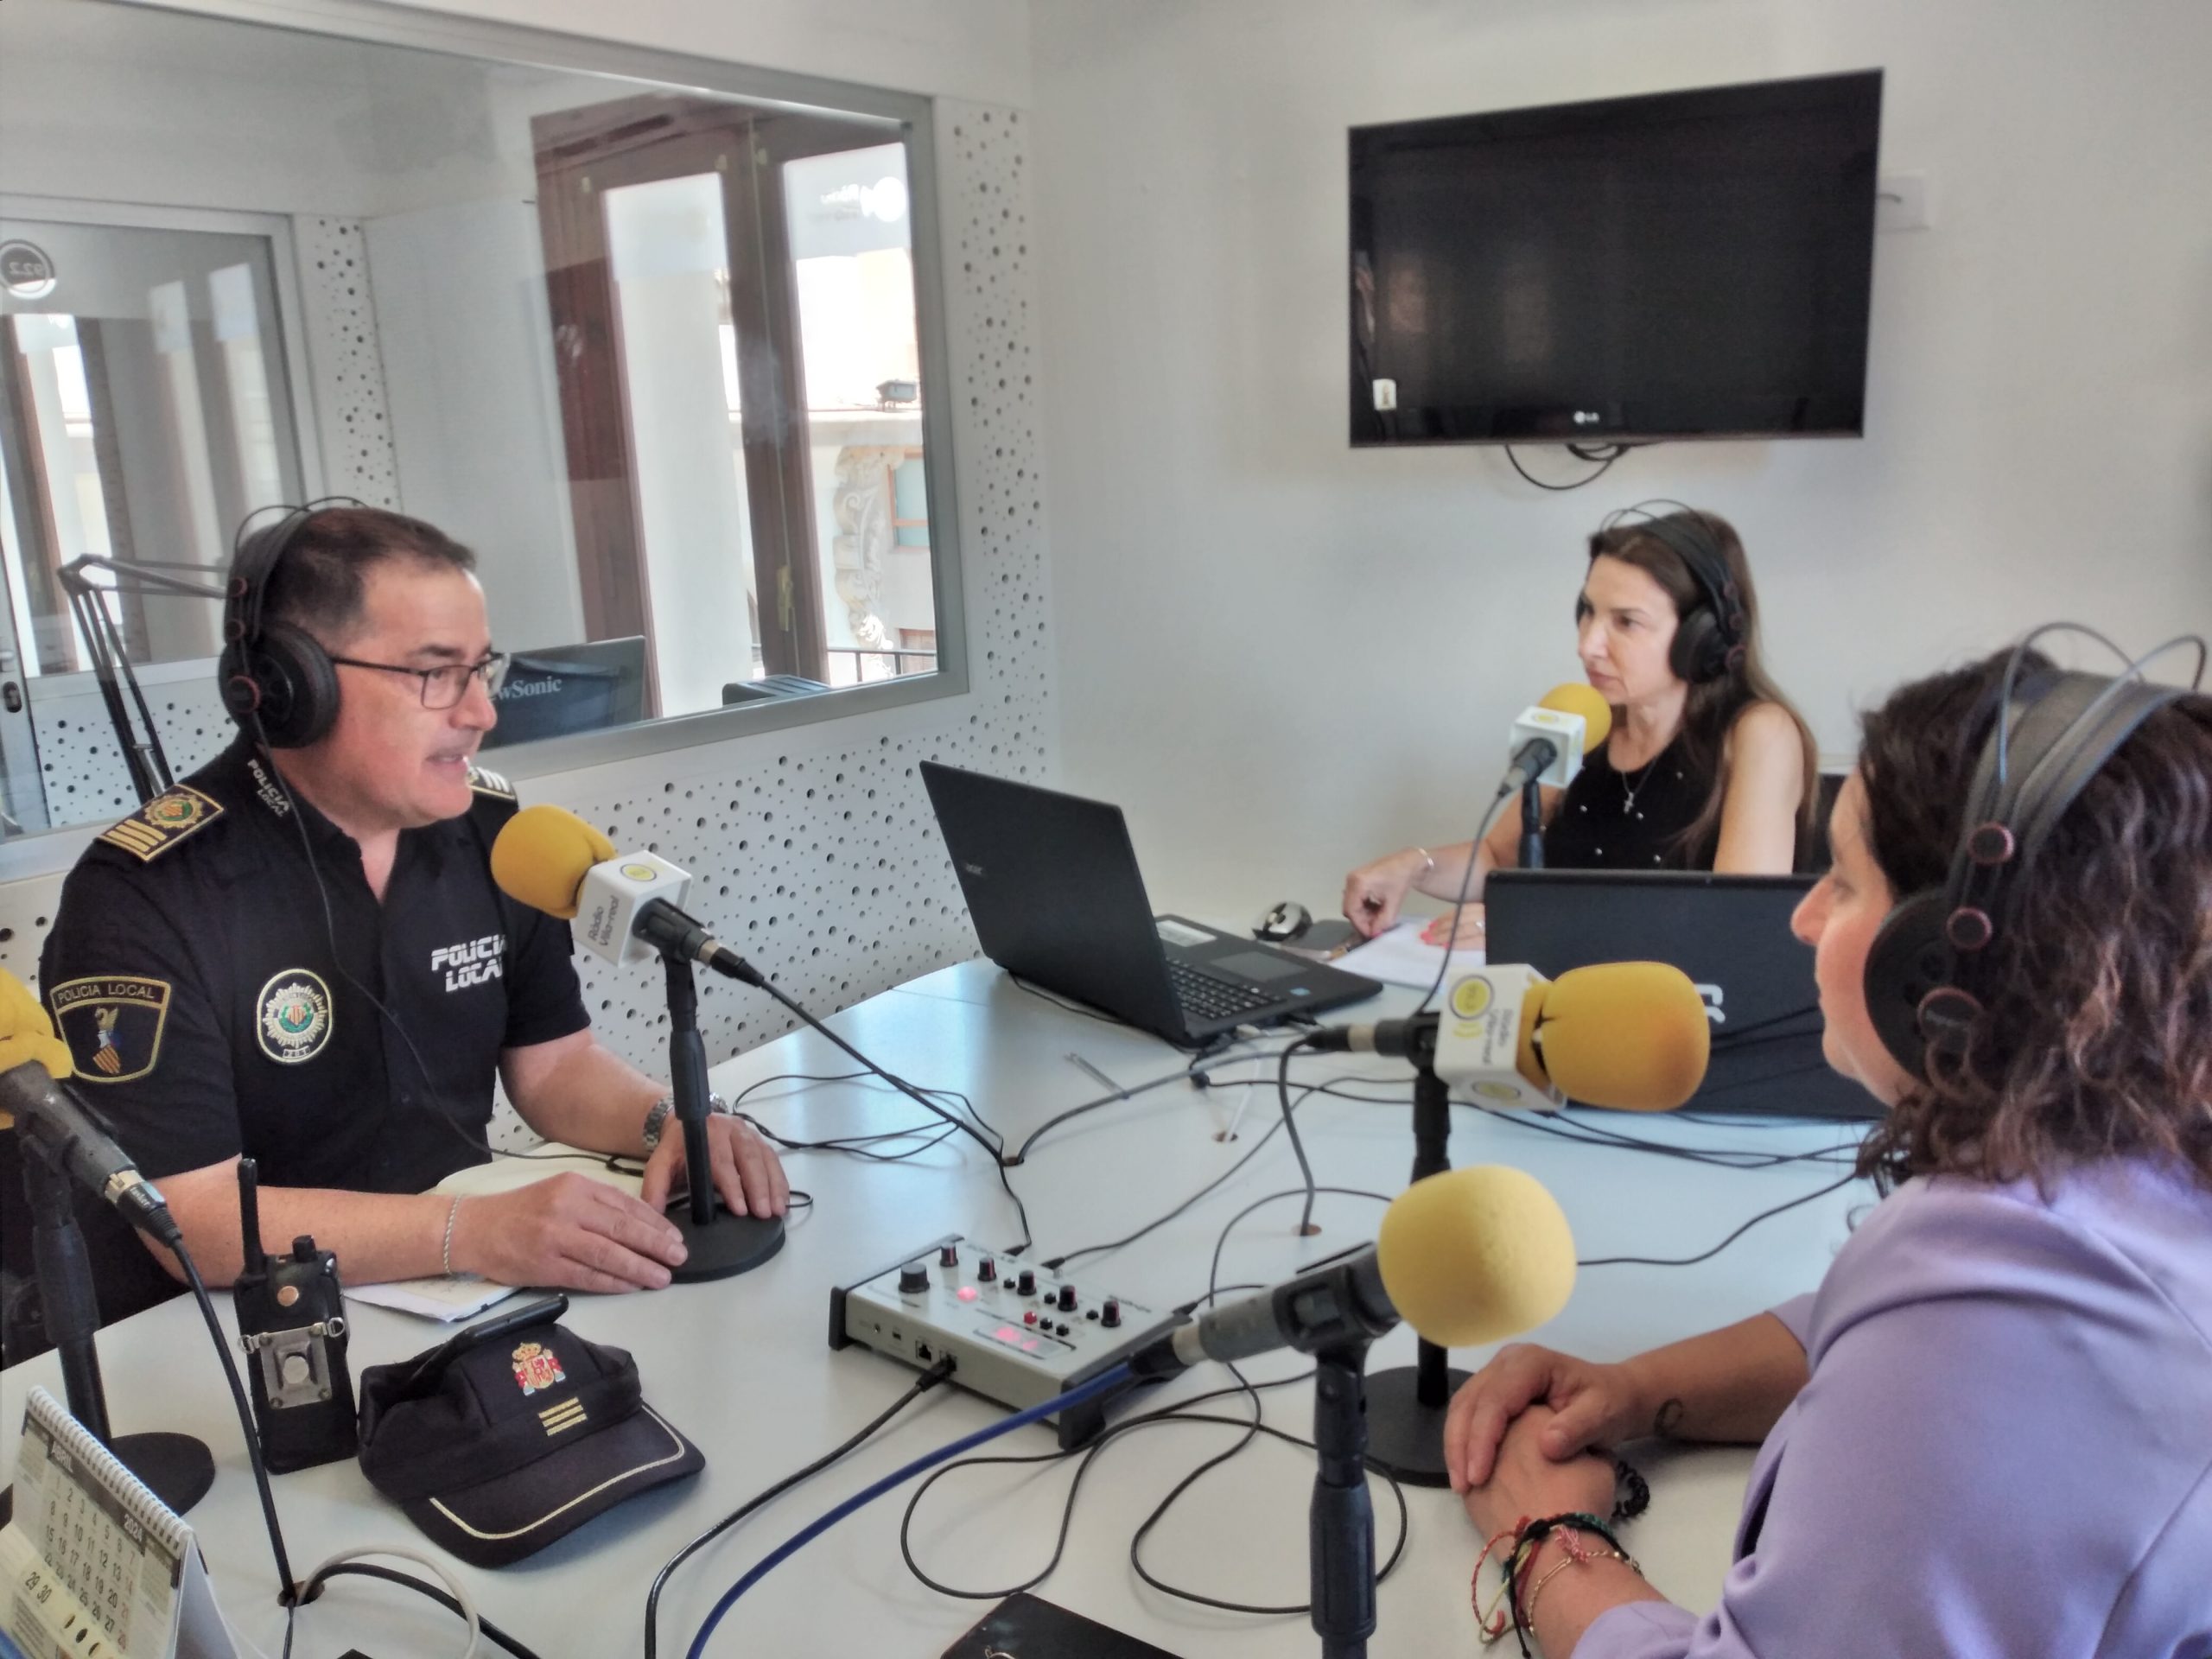 Parlem amb la regidora de festes de Vila-real Miriam Caravaca i l’intendent de la Policia Local, Ramón Martínez